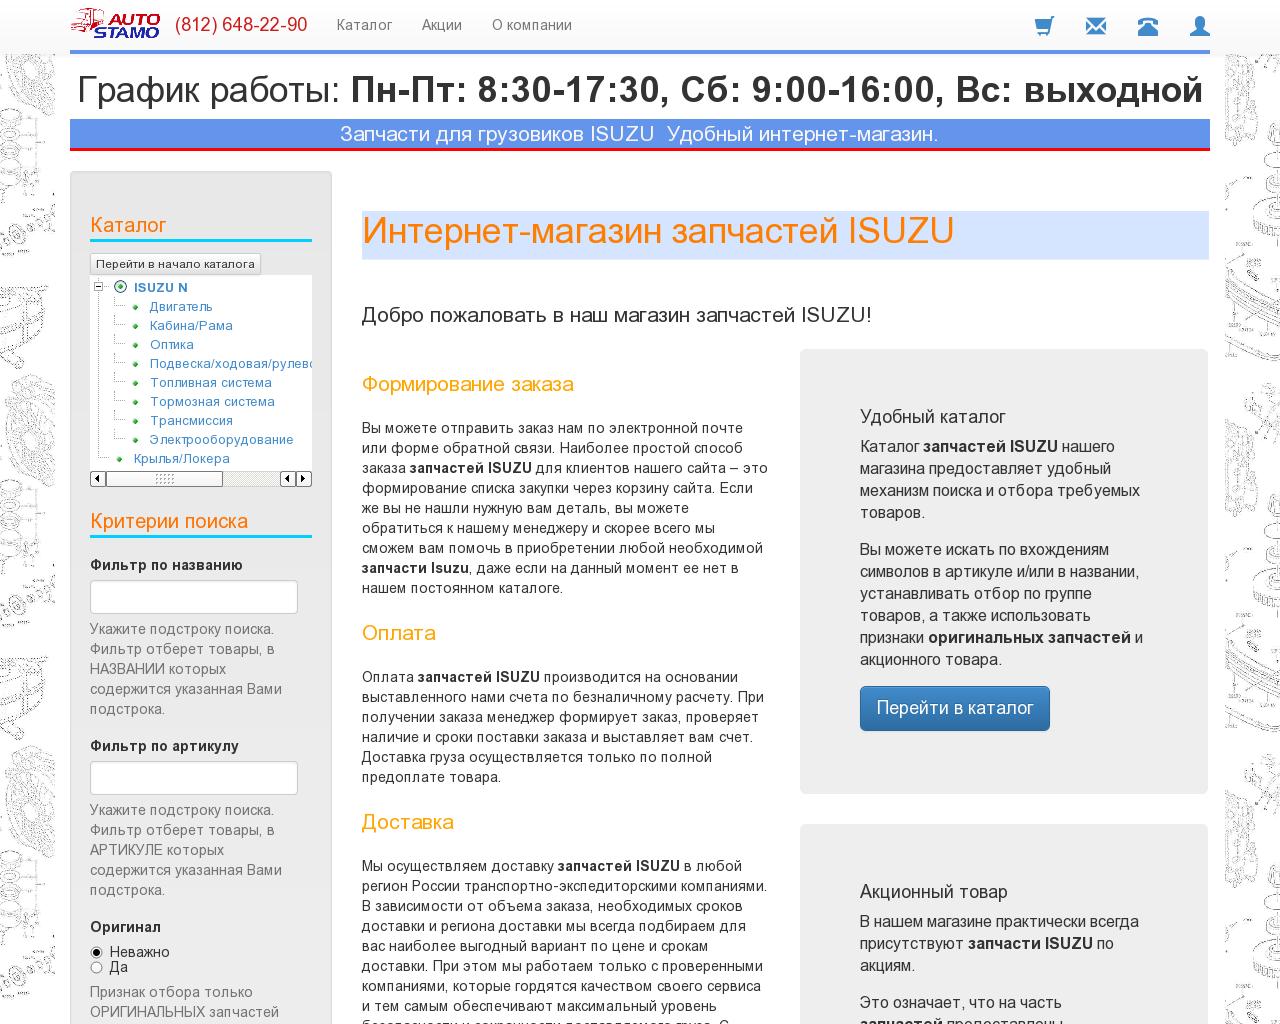 Изображение сайта autostamo.ru в разрешении 1280x1024